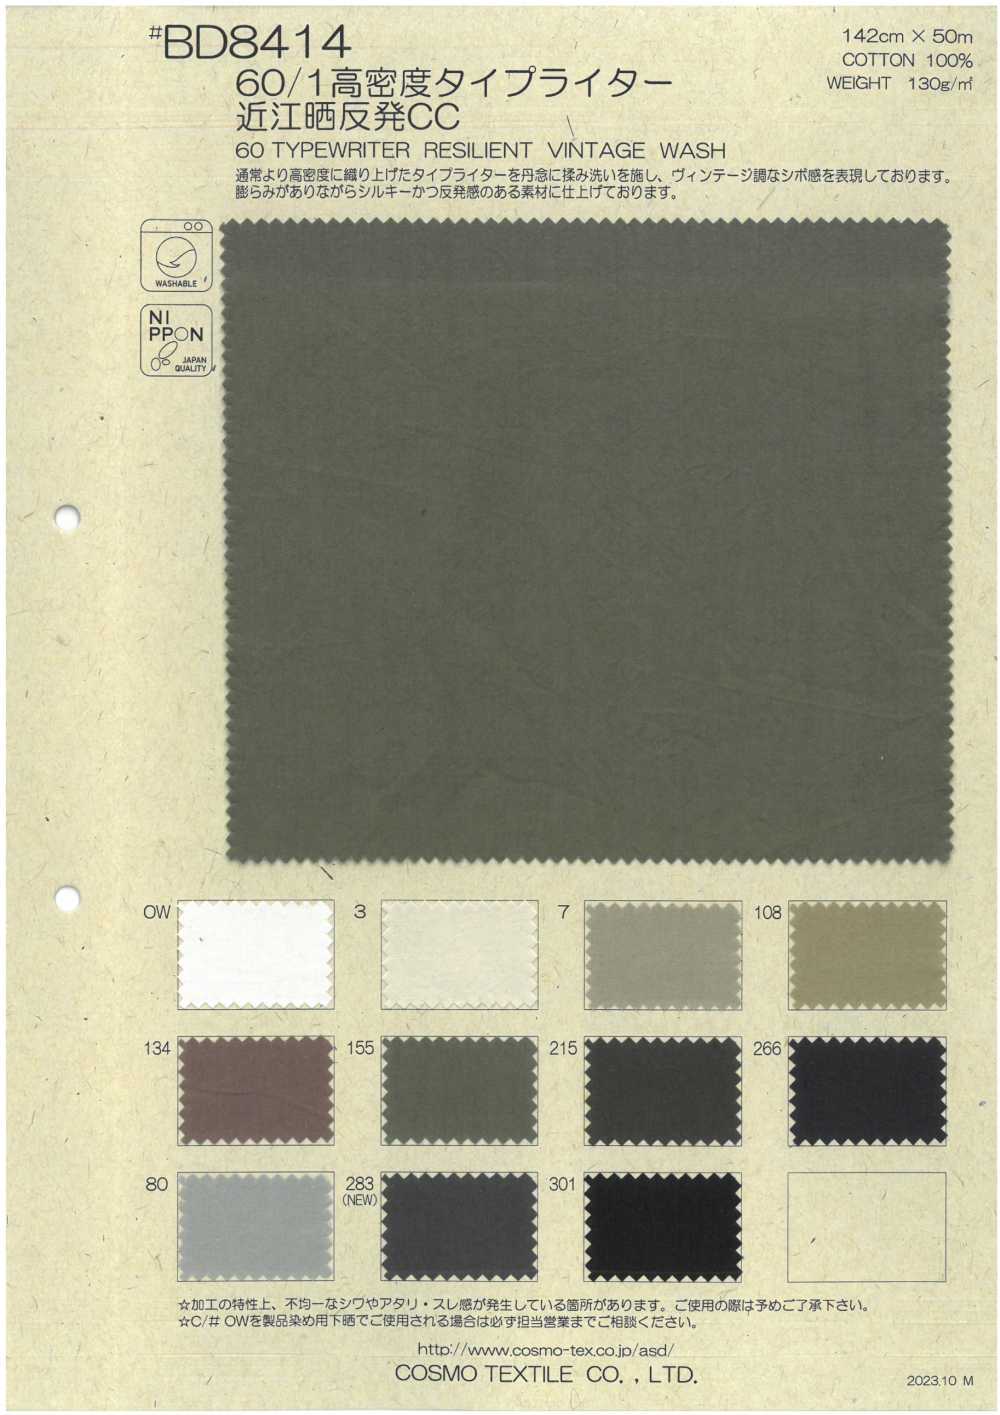 BD8414 60/1 Hochdichtes Schreibmaschinentuch Omi Bleached Roll CC[Textilgewebe] COSMO TEXTILE